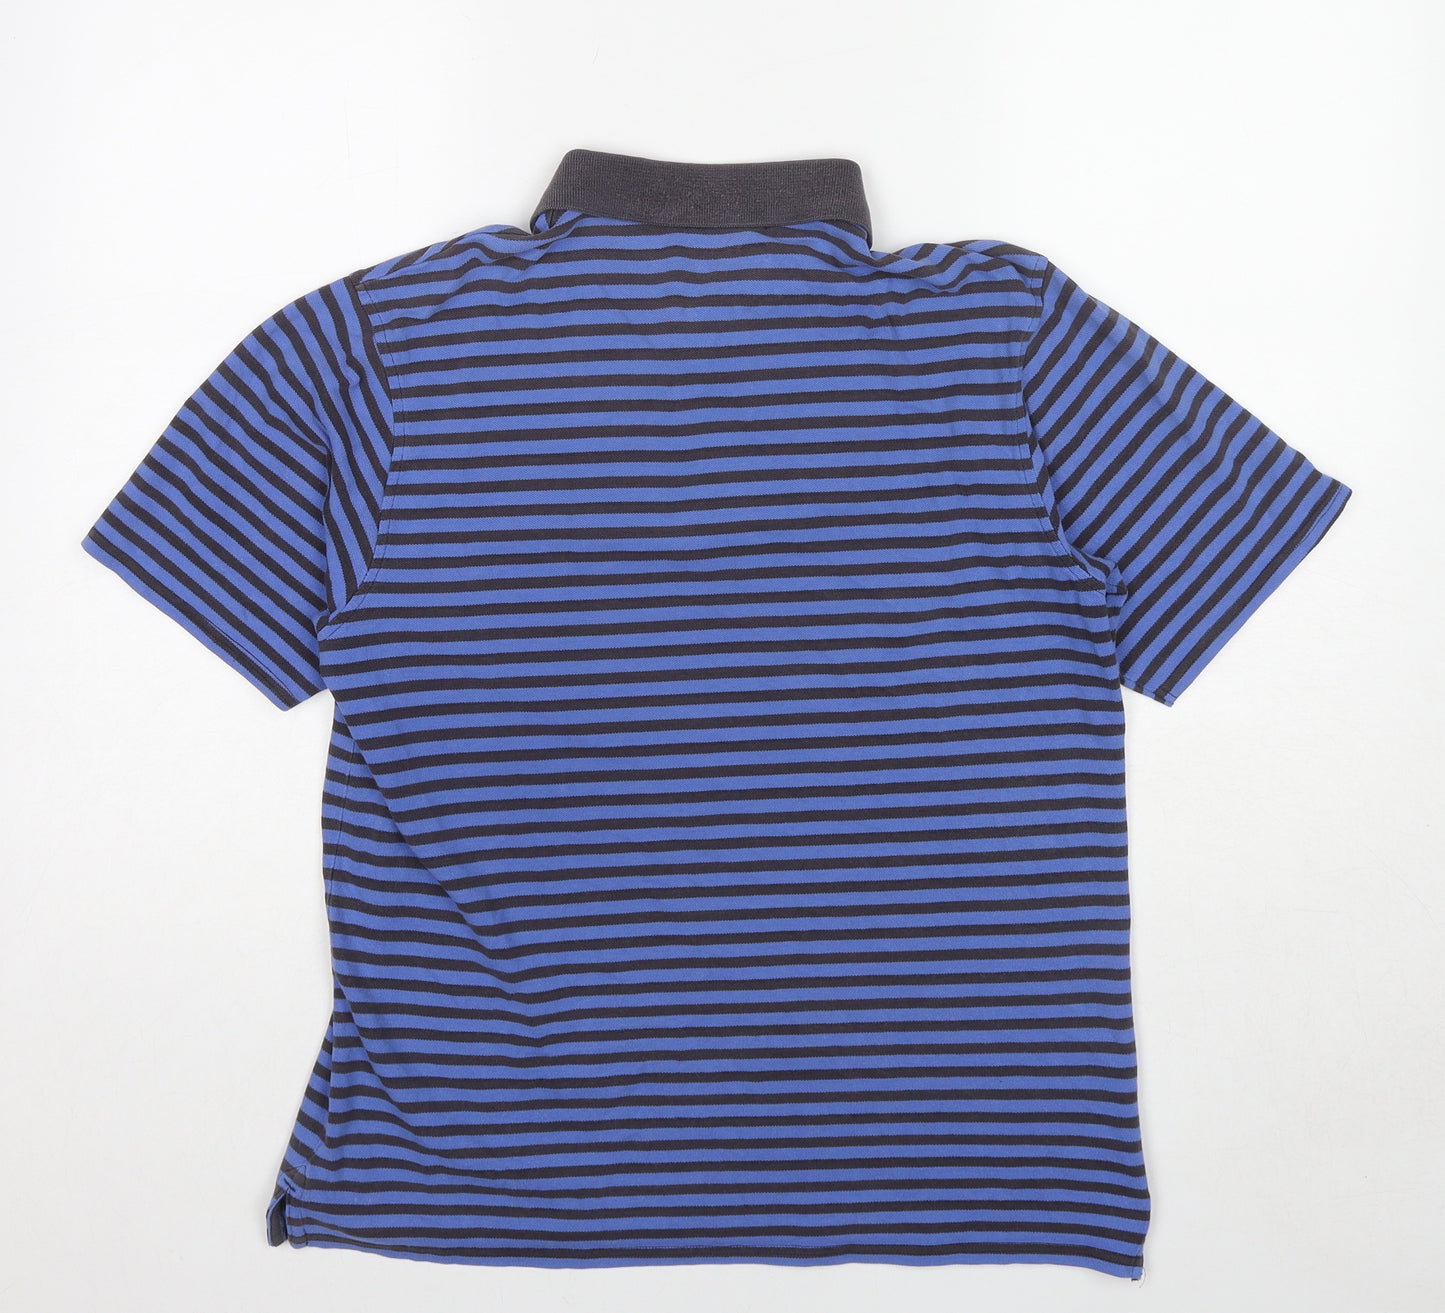 Burton Mens Blue Striped Cotton Polo Size M Collared Pullover